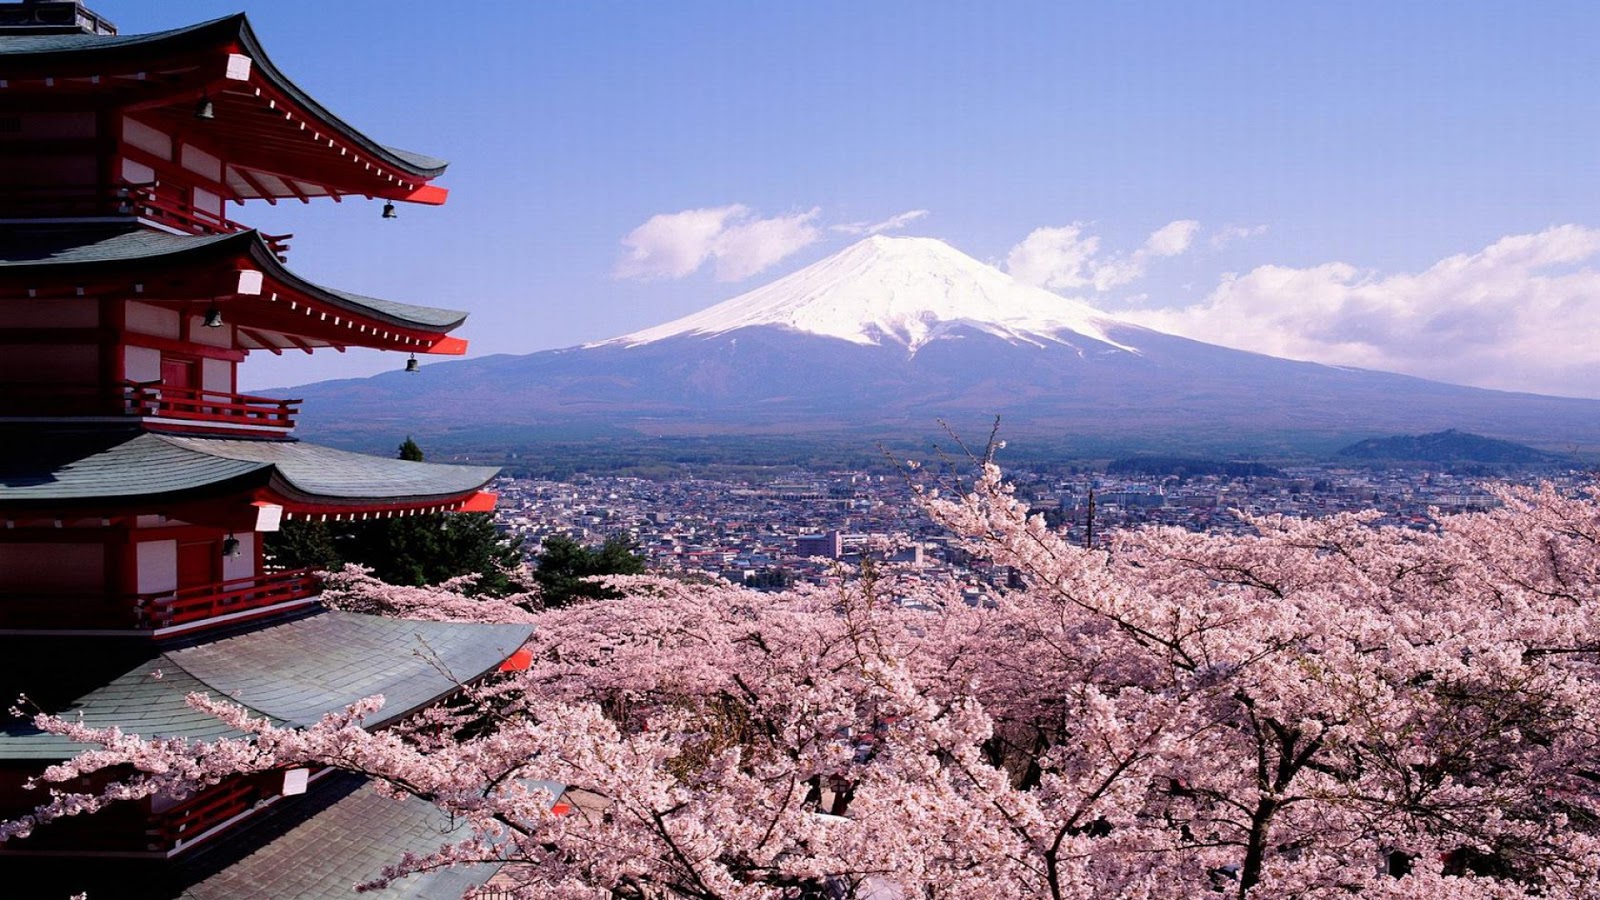 Tempat Wisata Jepang Yang Favorit